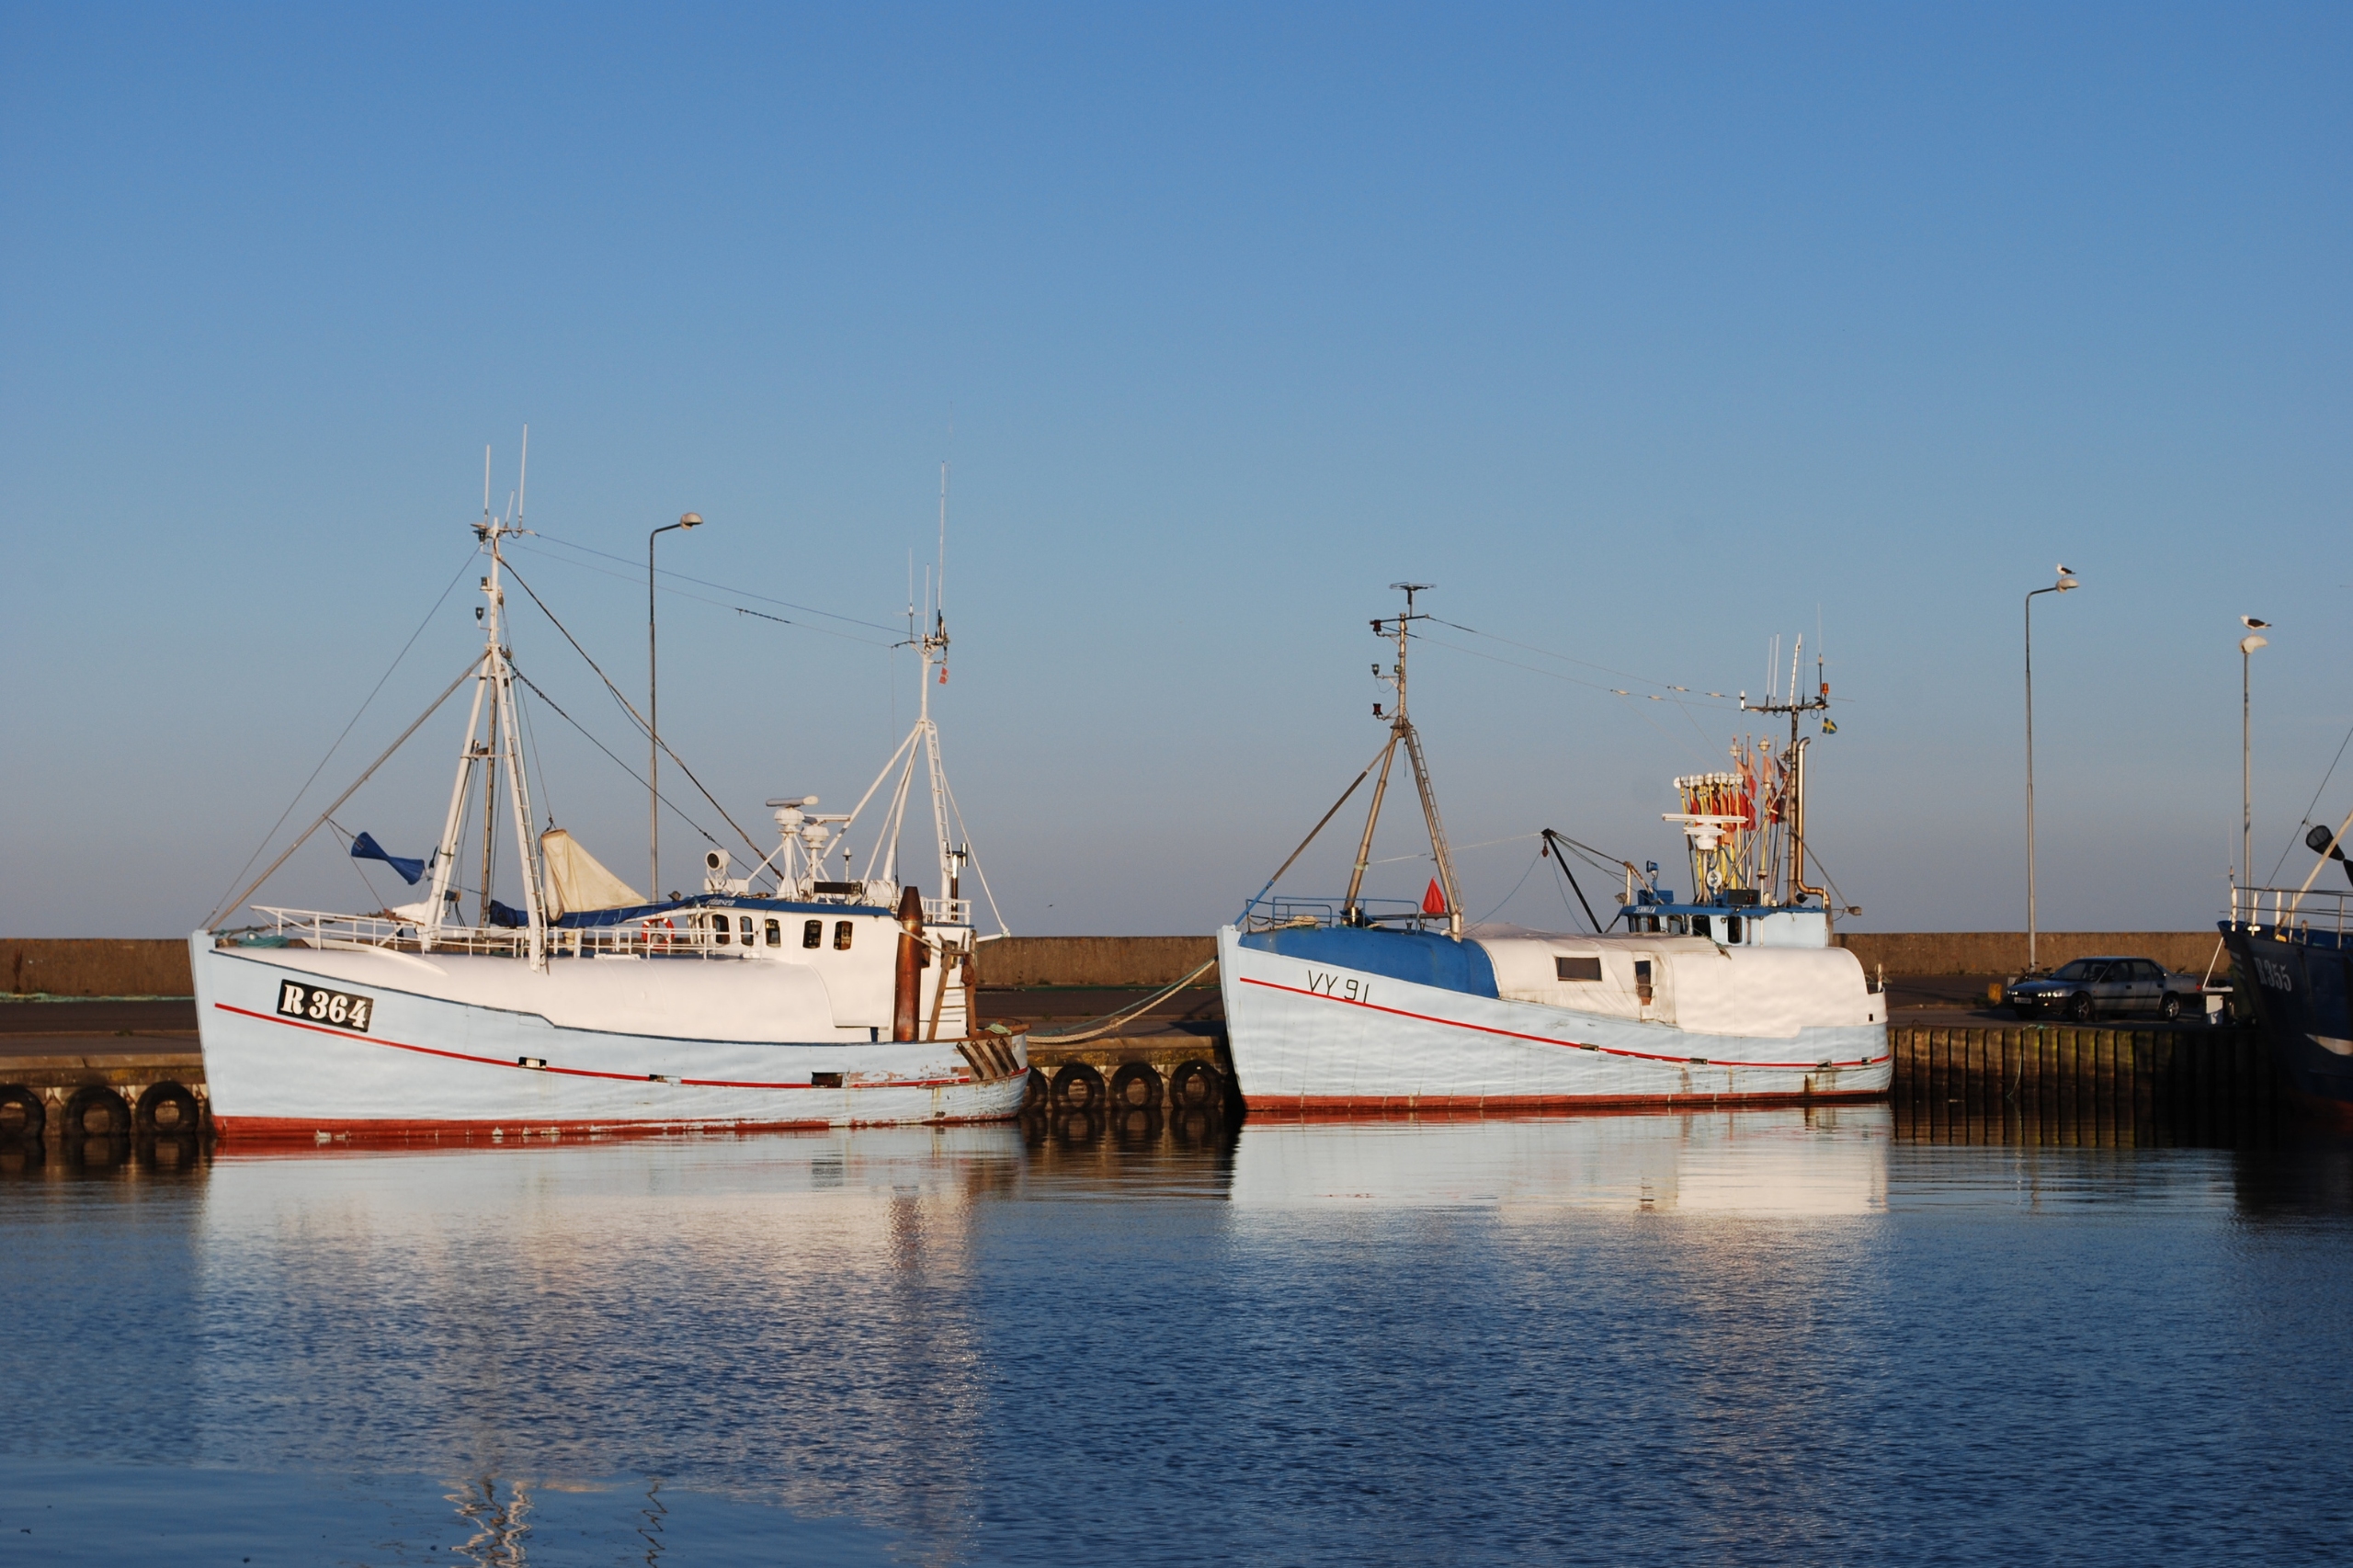 Den charmerende by Nexø udgør en ideel destination til at opleve Bornholms maritime flair.